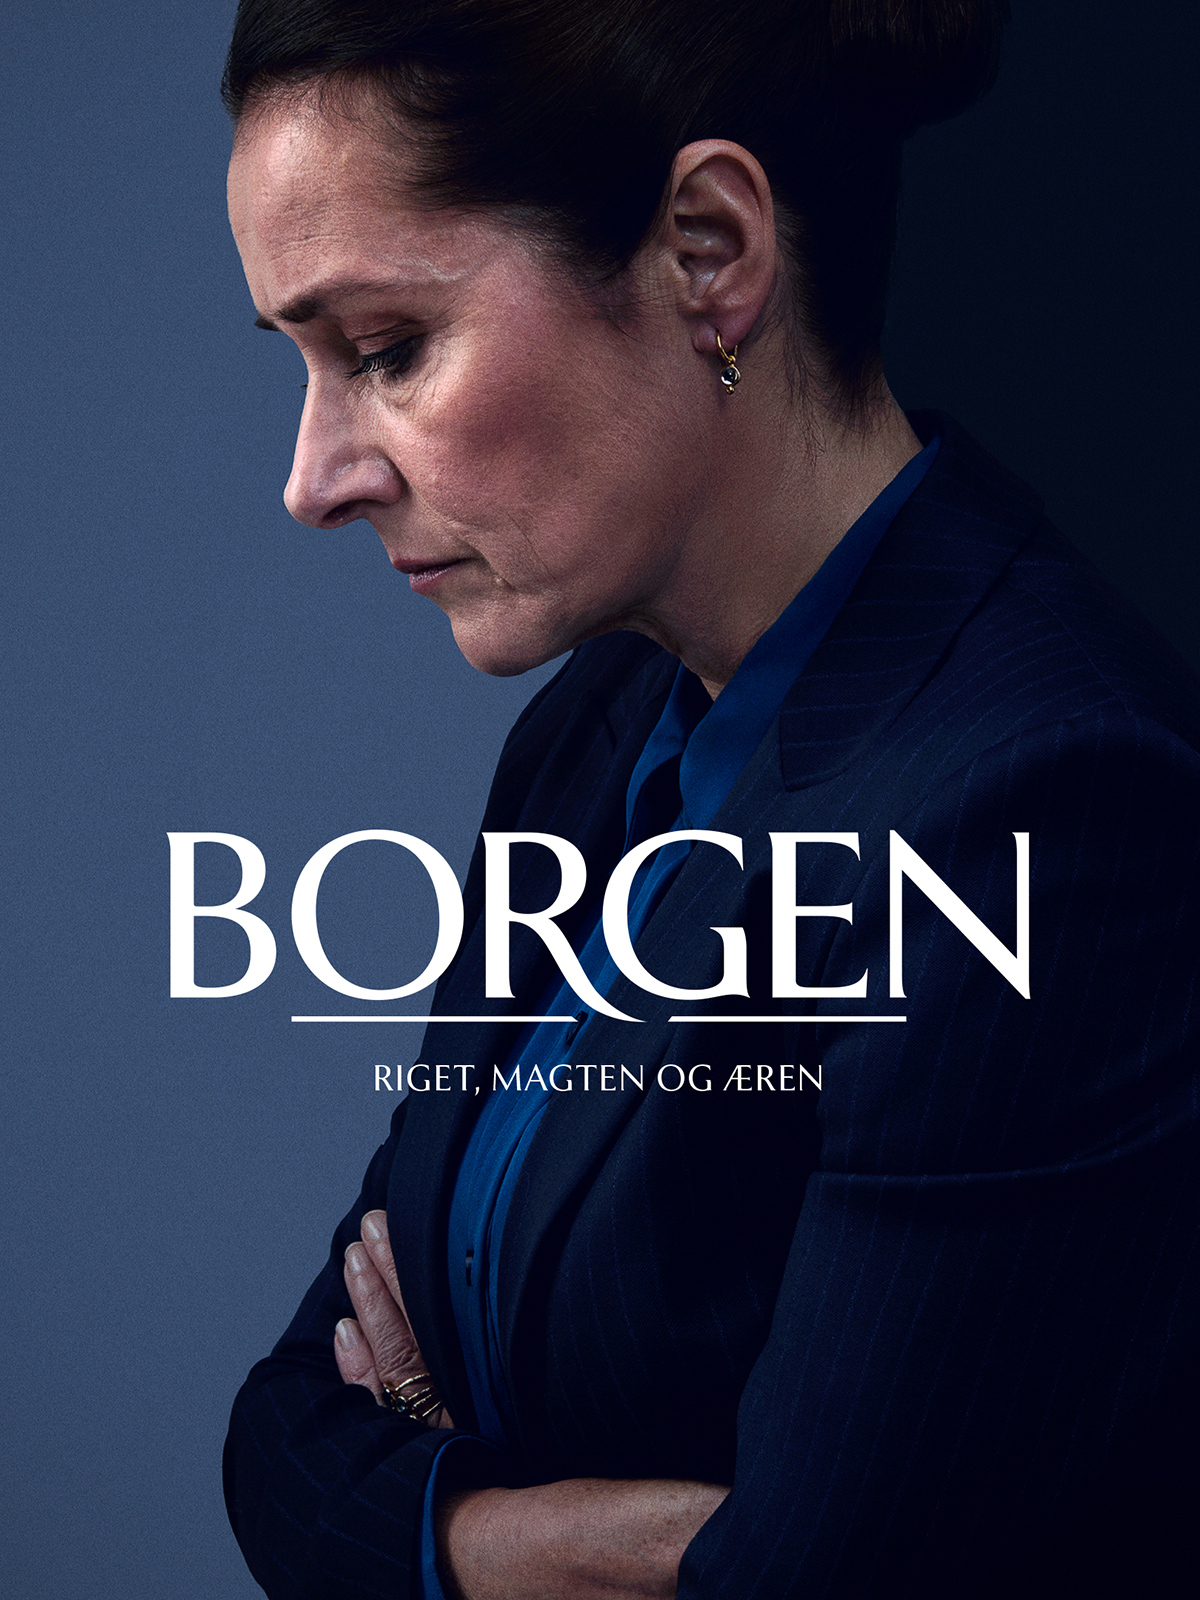 Borgen : Le pouvoir et la gloire - Série TV 2022 streaming VF gratuit complet